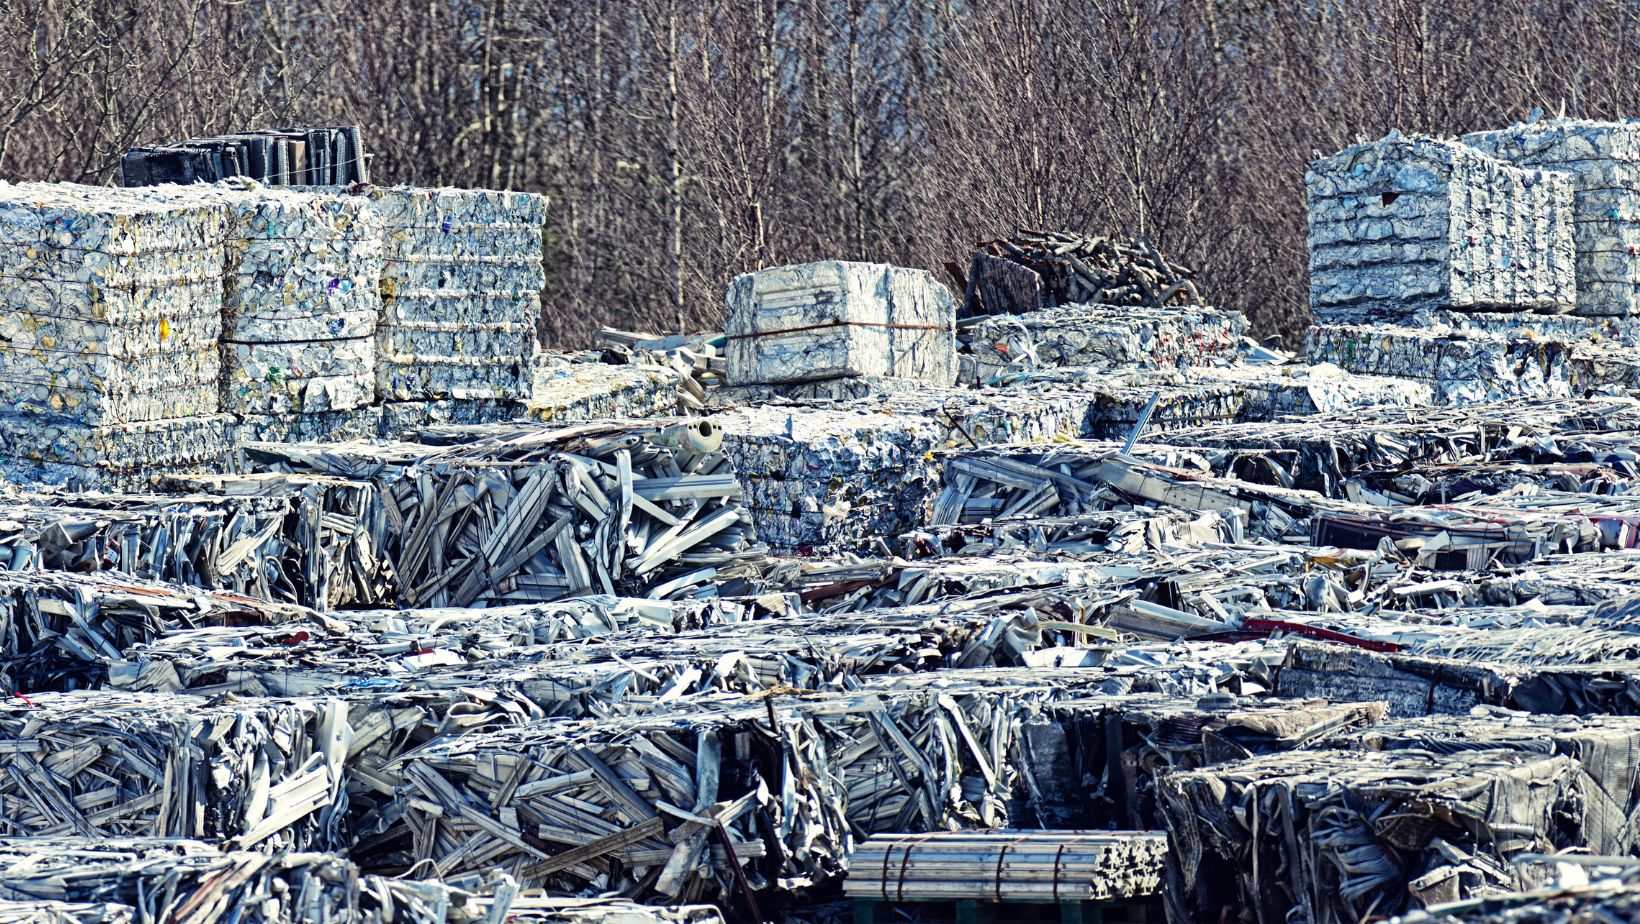 Compact piles of scrap metal